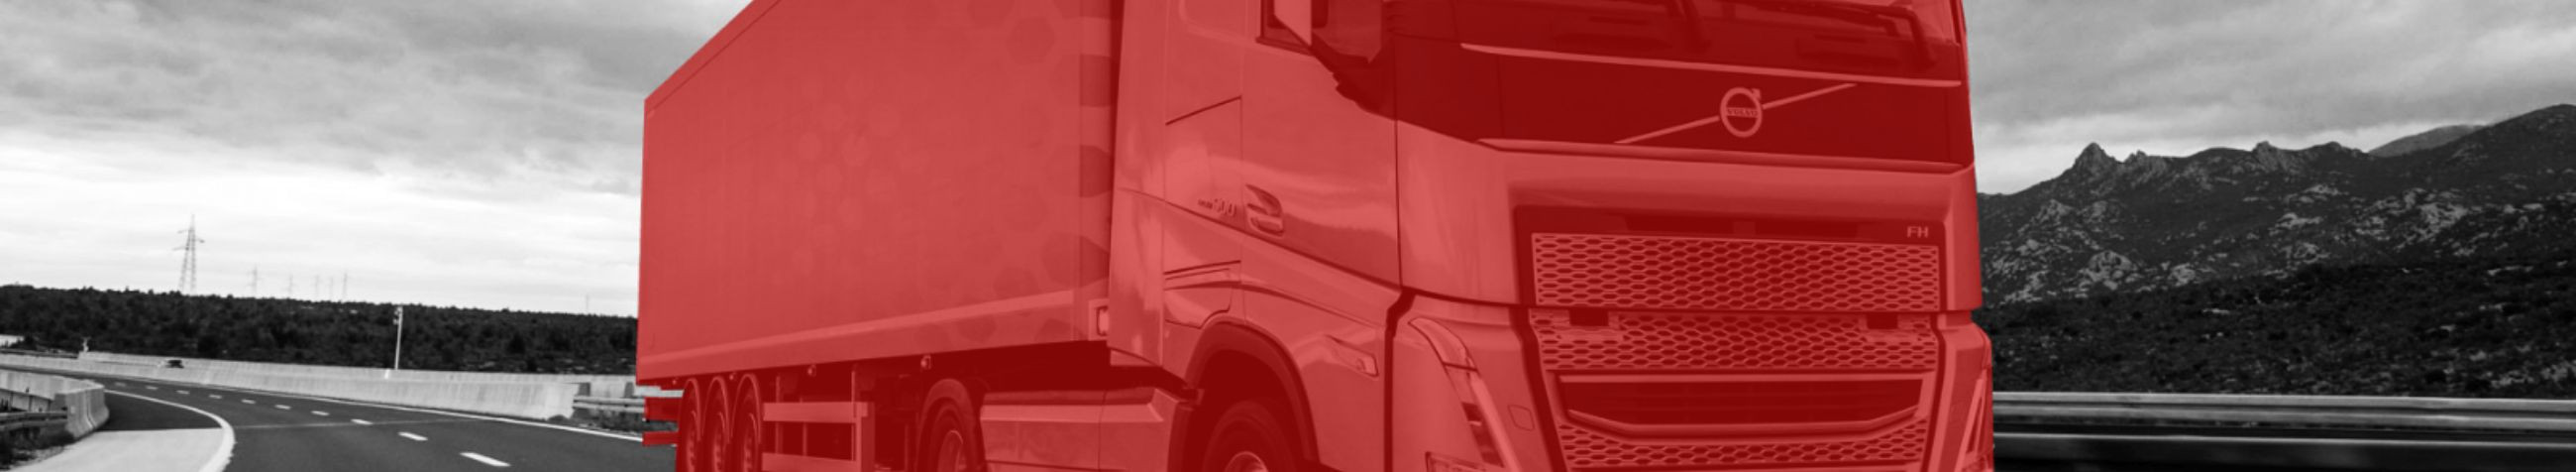 NORDPARTS OÜ tegeleb veoautode keredetailide, pealisehitusdetailide ja kvaliteetsete LED tulede müügiga, pakkudes klientidele kohandatud lahendusi vastavalt nende veoautode vajadustele.